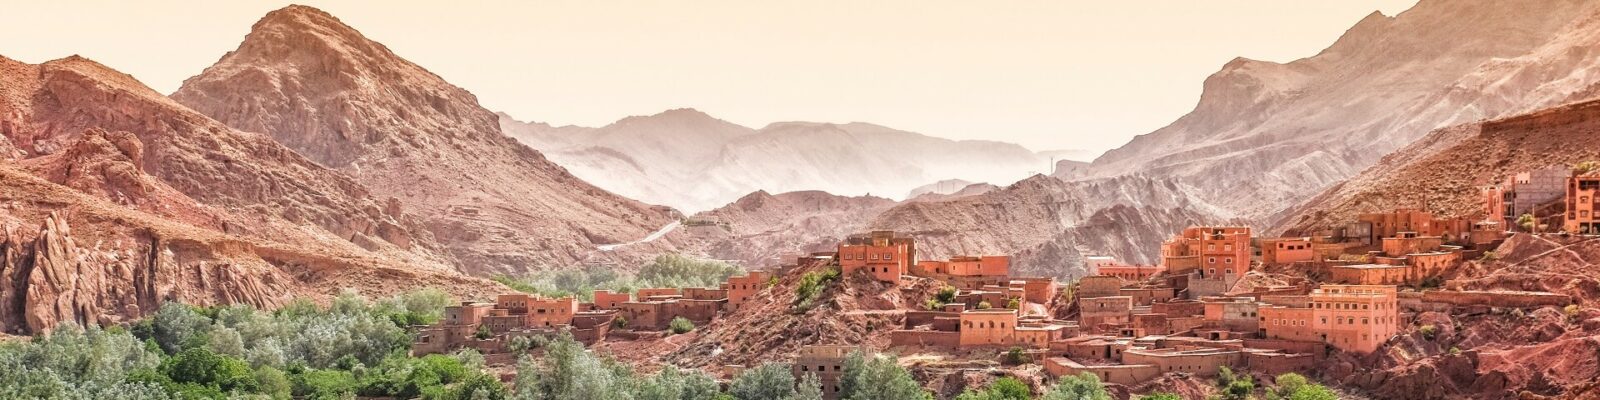 Explore Morocco’s incredible landscape